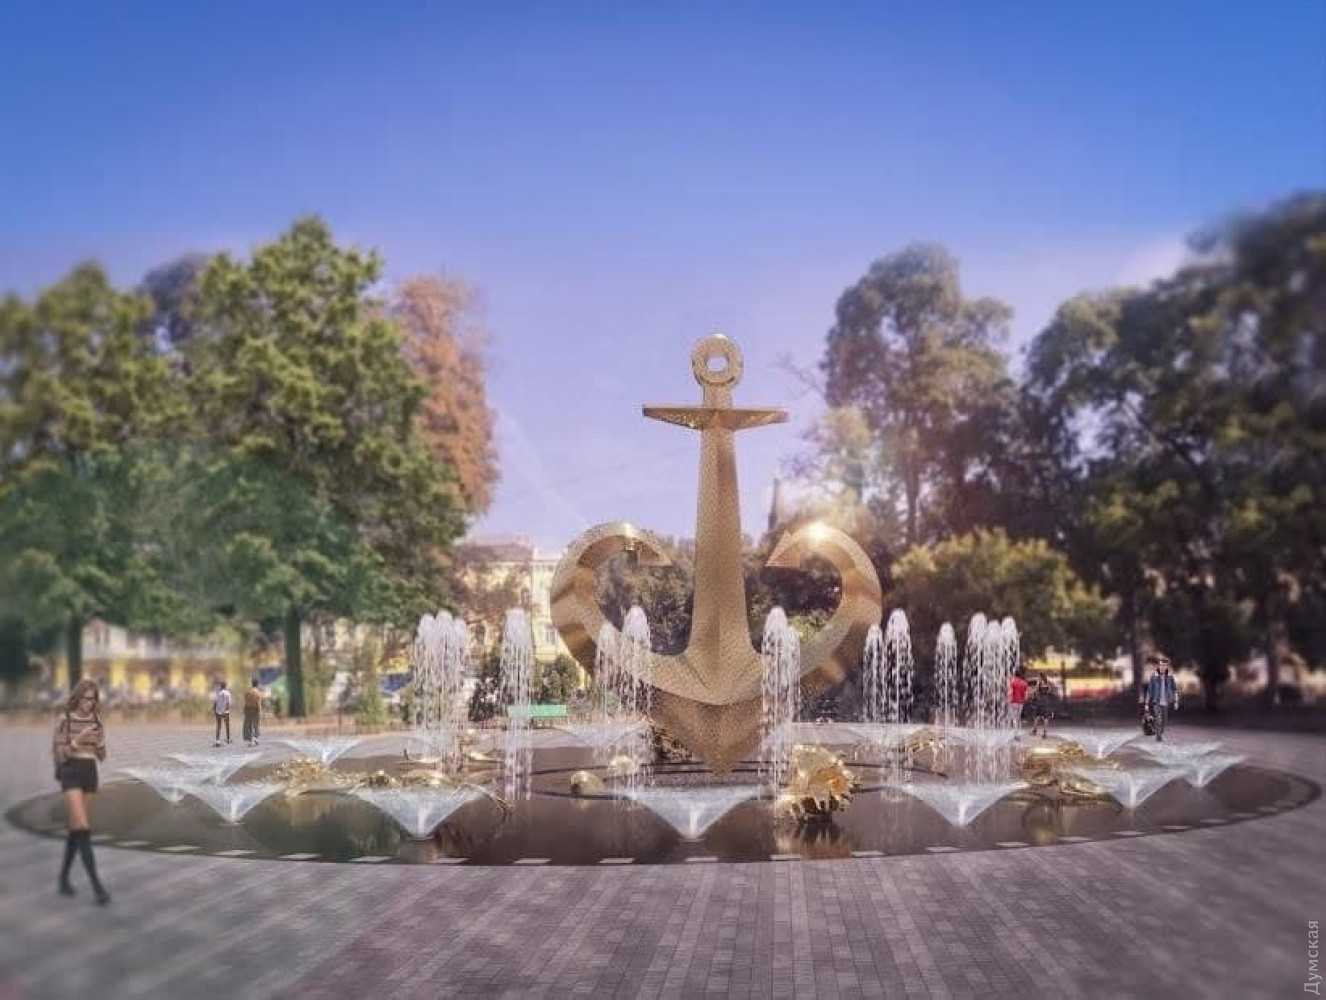 Площадь перед ЖД-вокзалом "Одесса" хотят украсить роскошным фонтаном с якорем за почти 40 млн грн